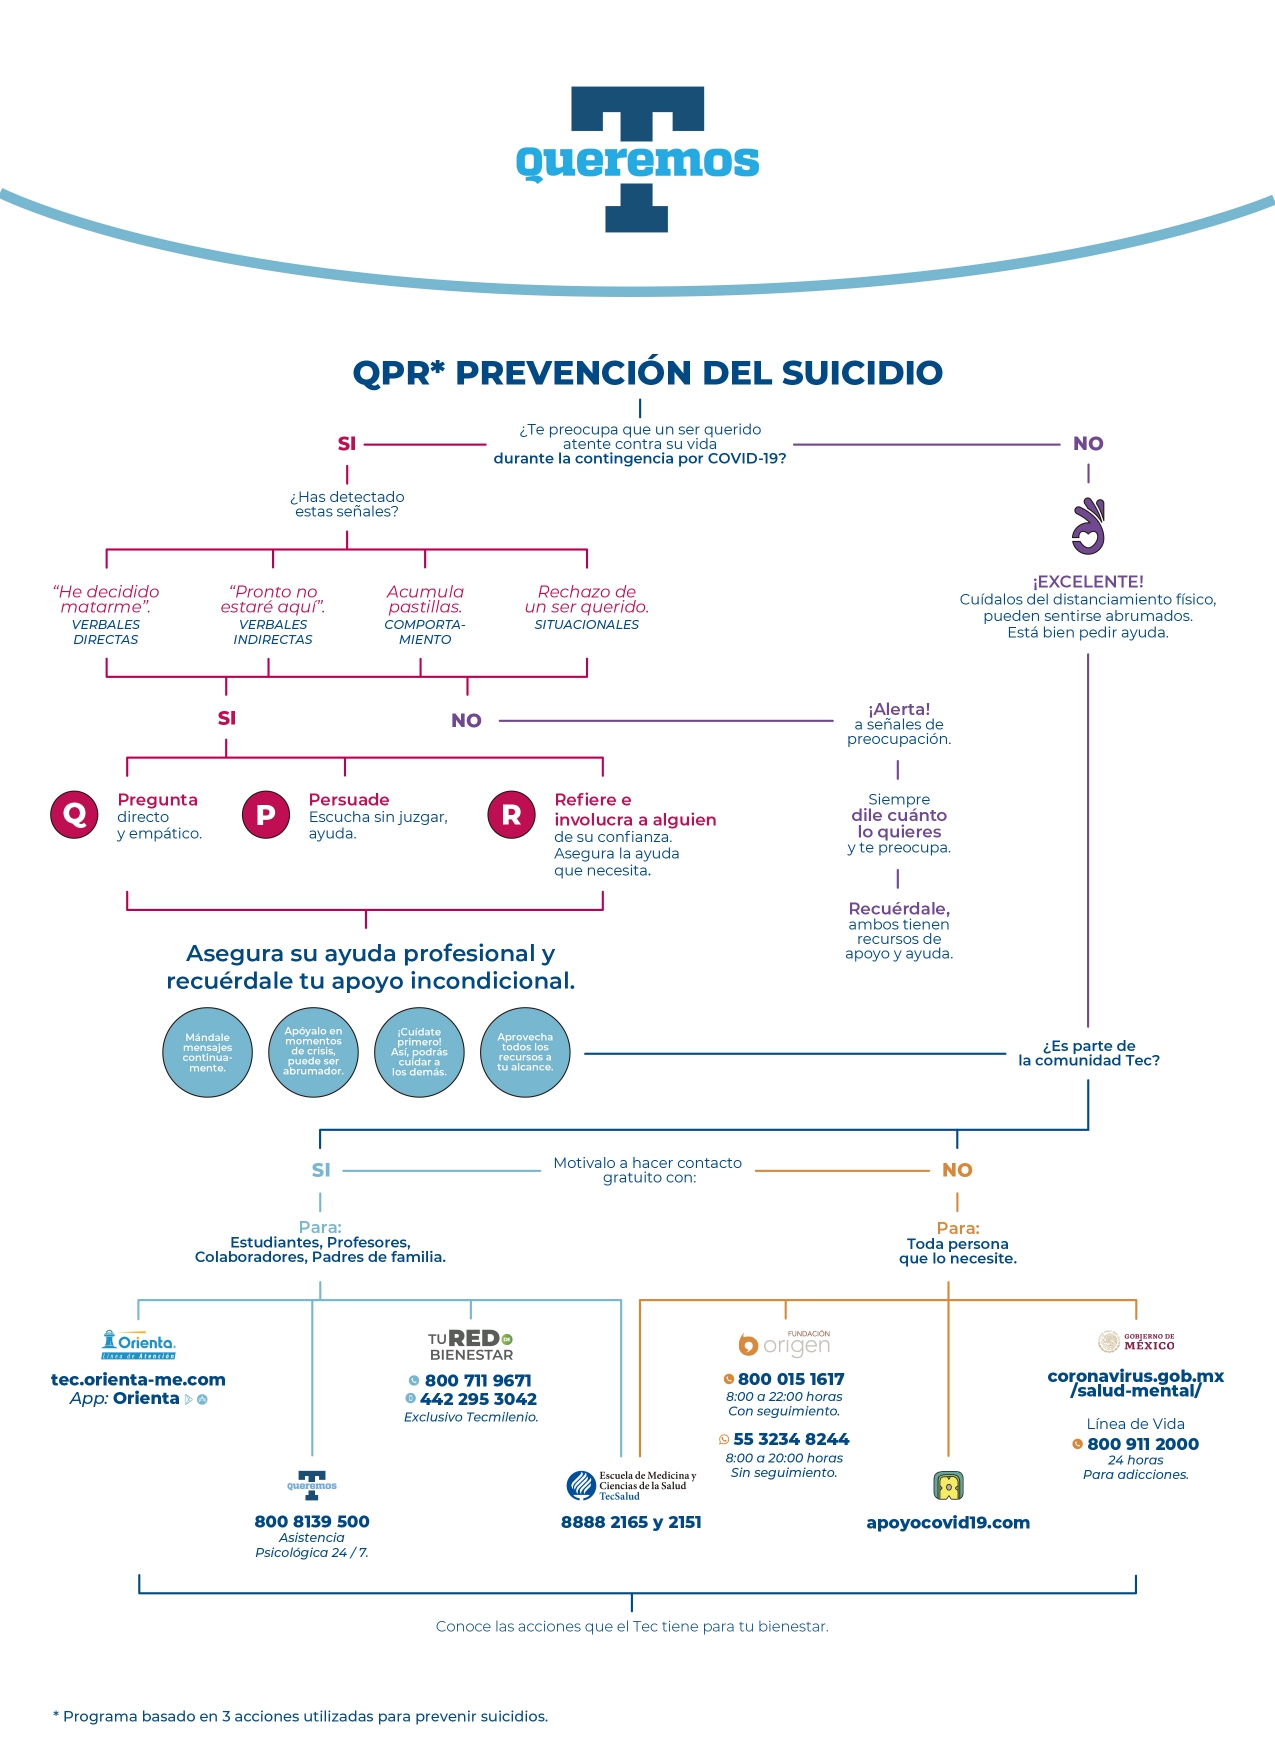 QPR Prevención del Suicidio